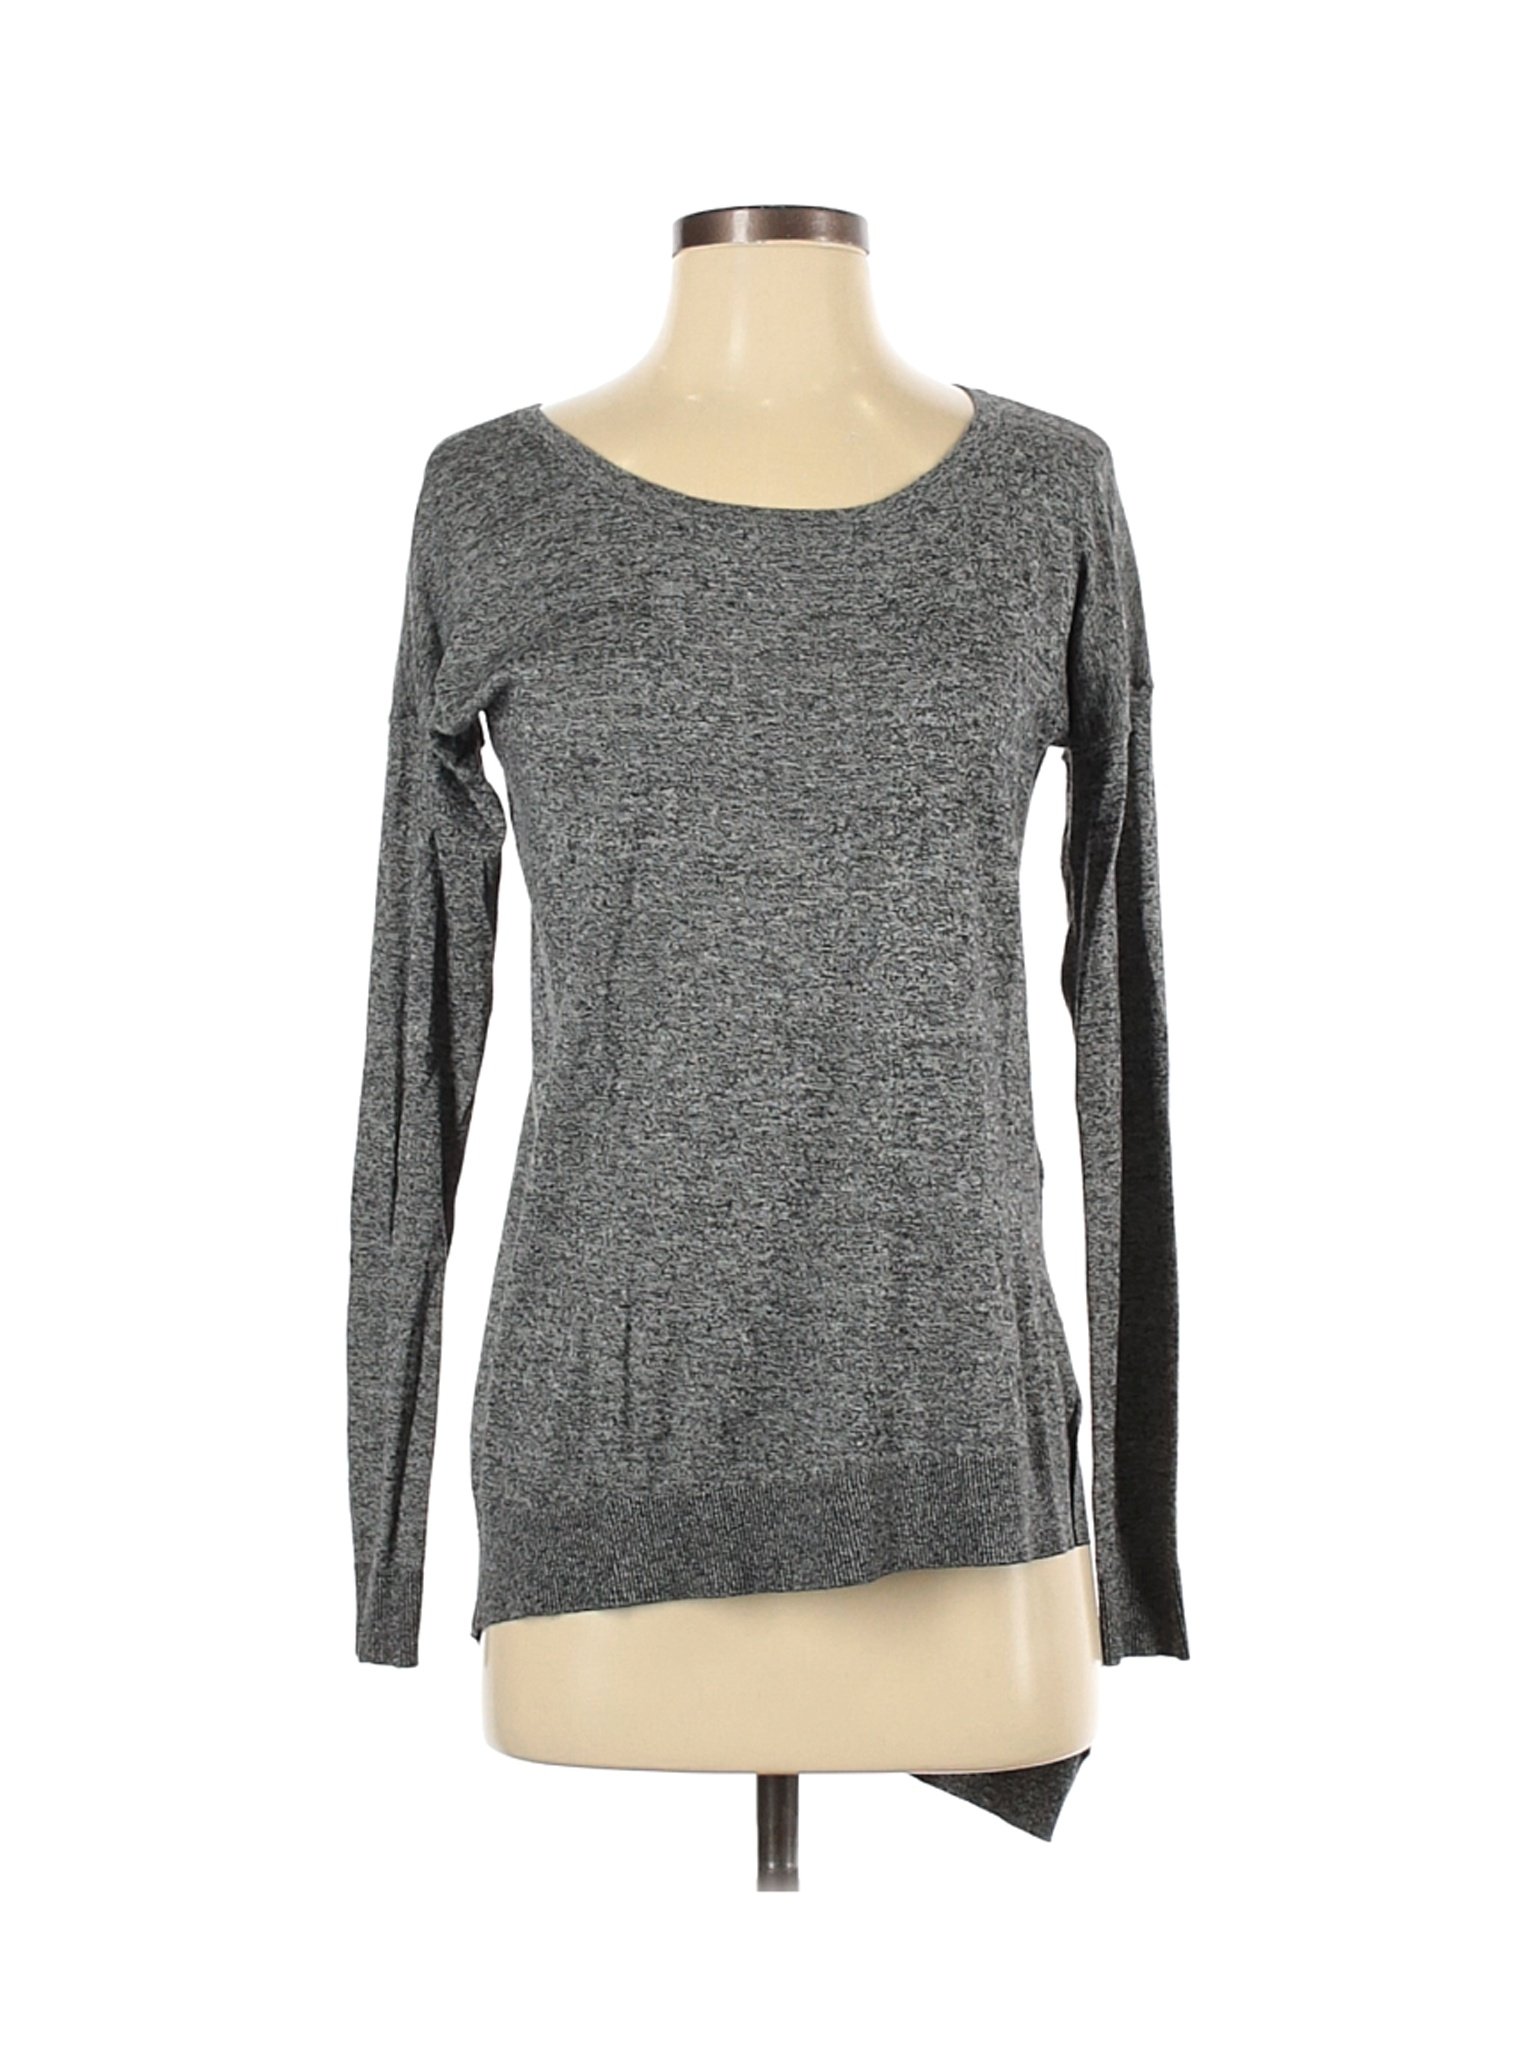 Express Women Gray Long Sleeve T-Shirt S | eBay